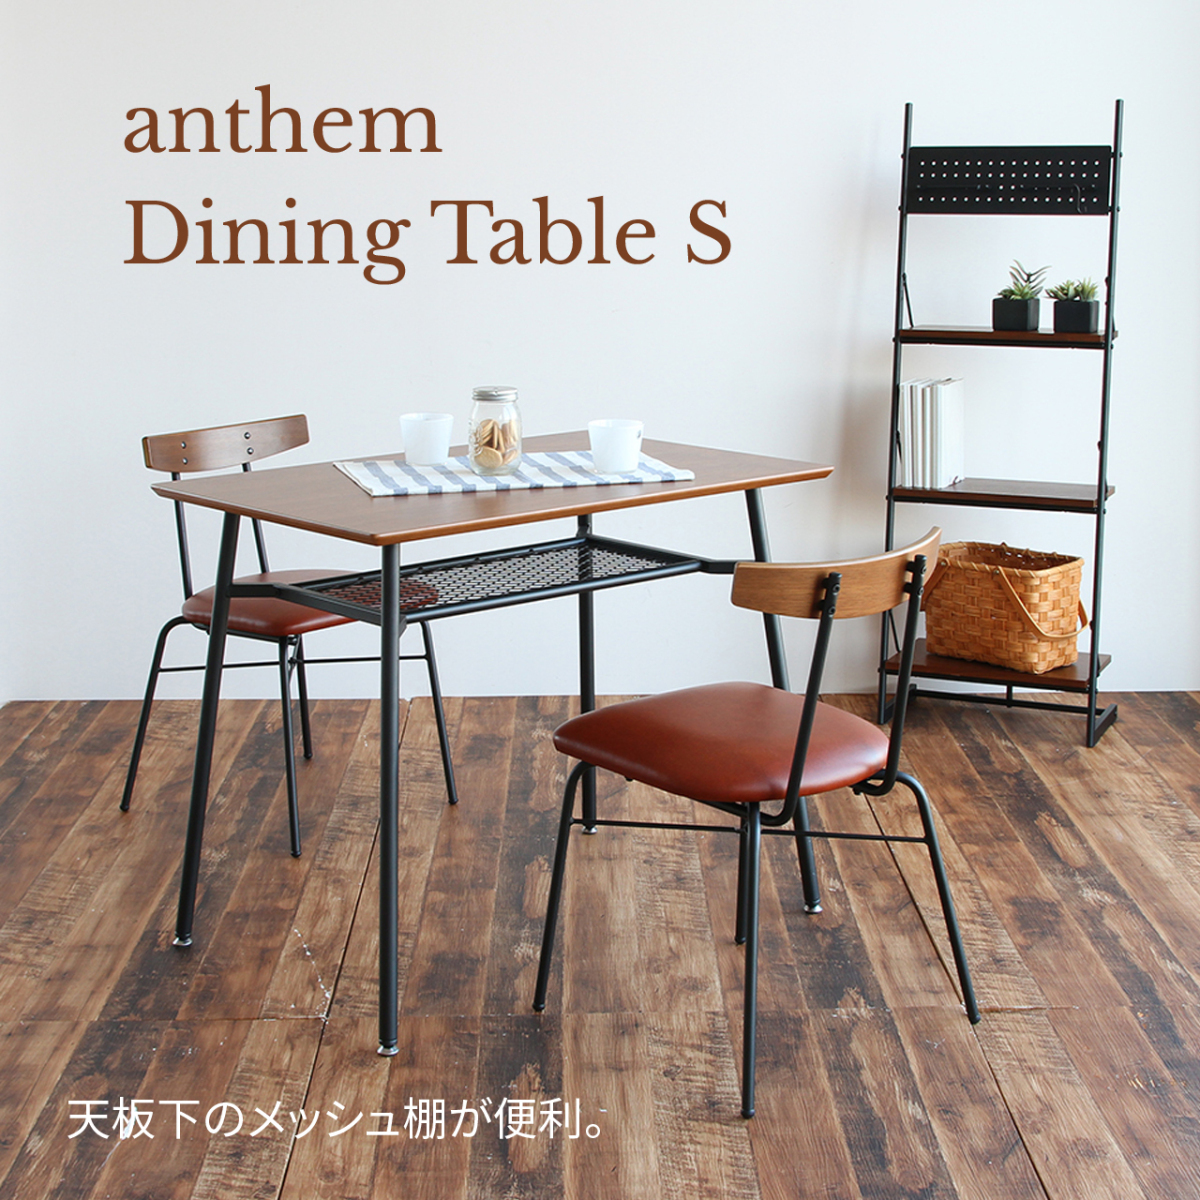 アンセム ダイニングテーブル anthem Dining Table S 90センチ×60センチ 省スペース ANT-2831BR